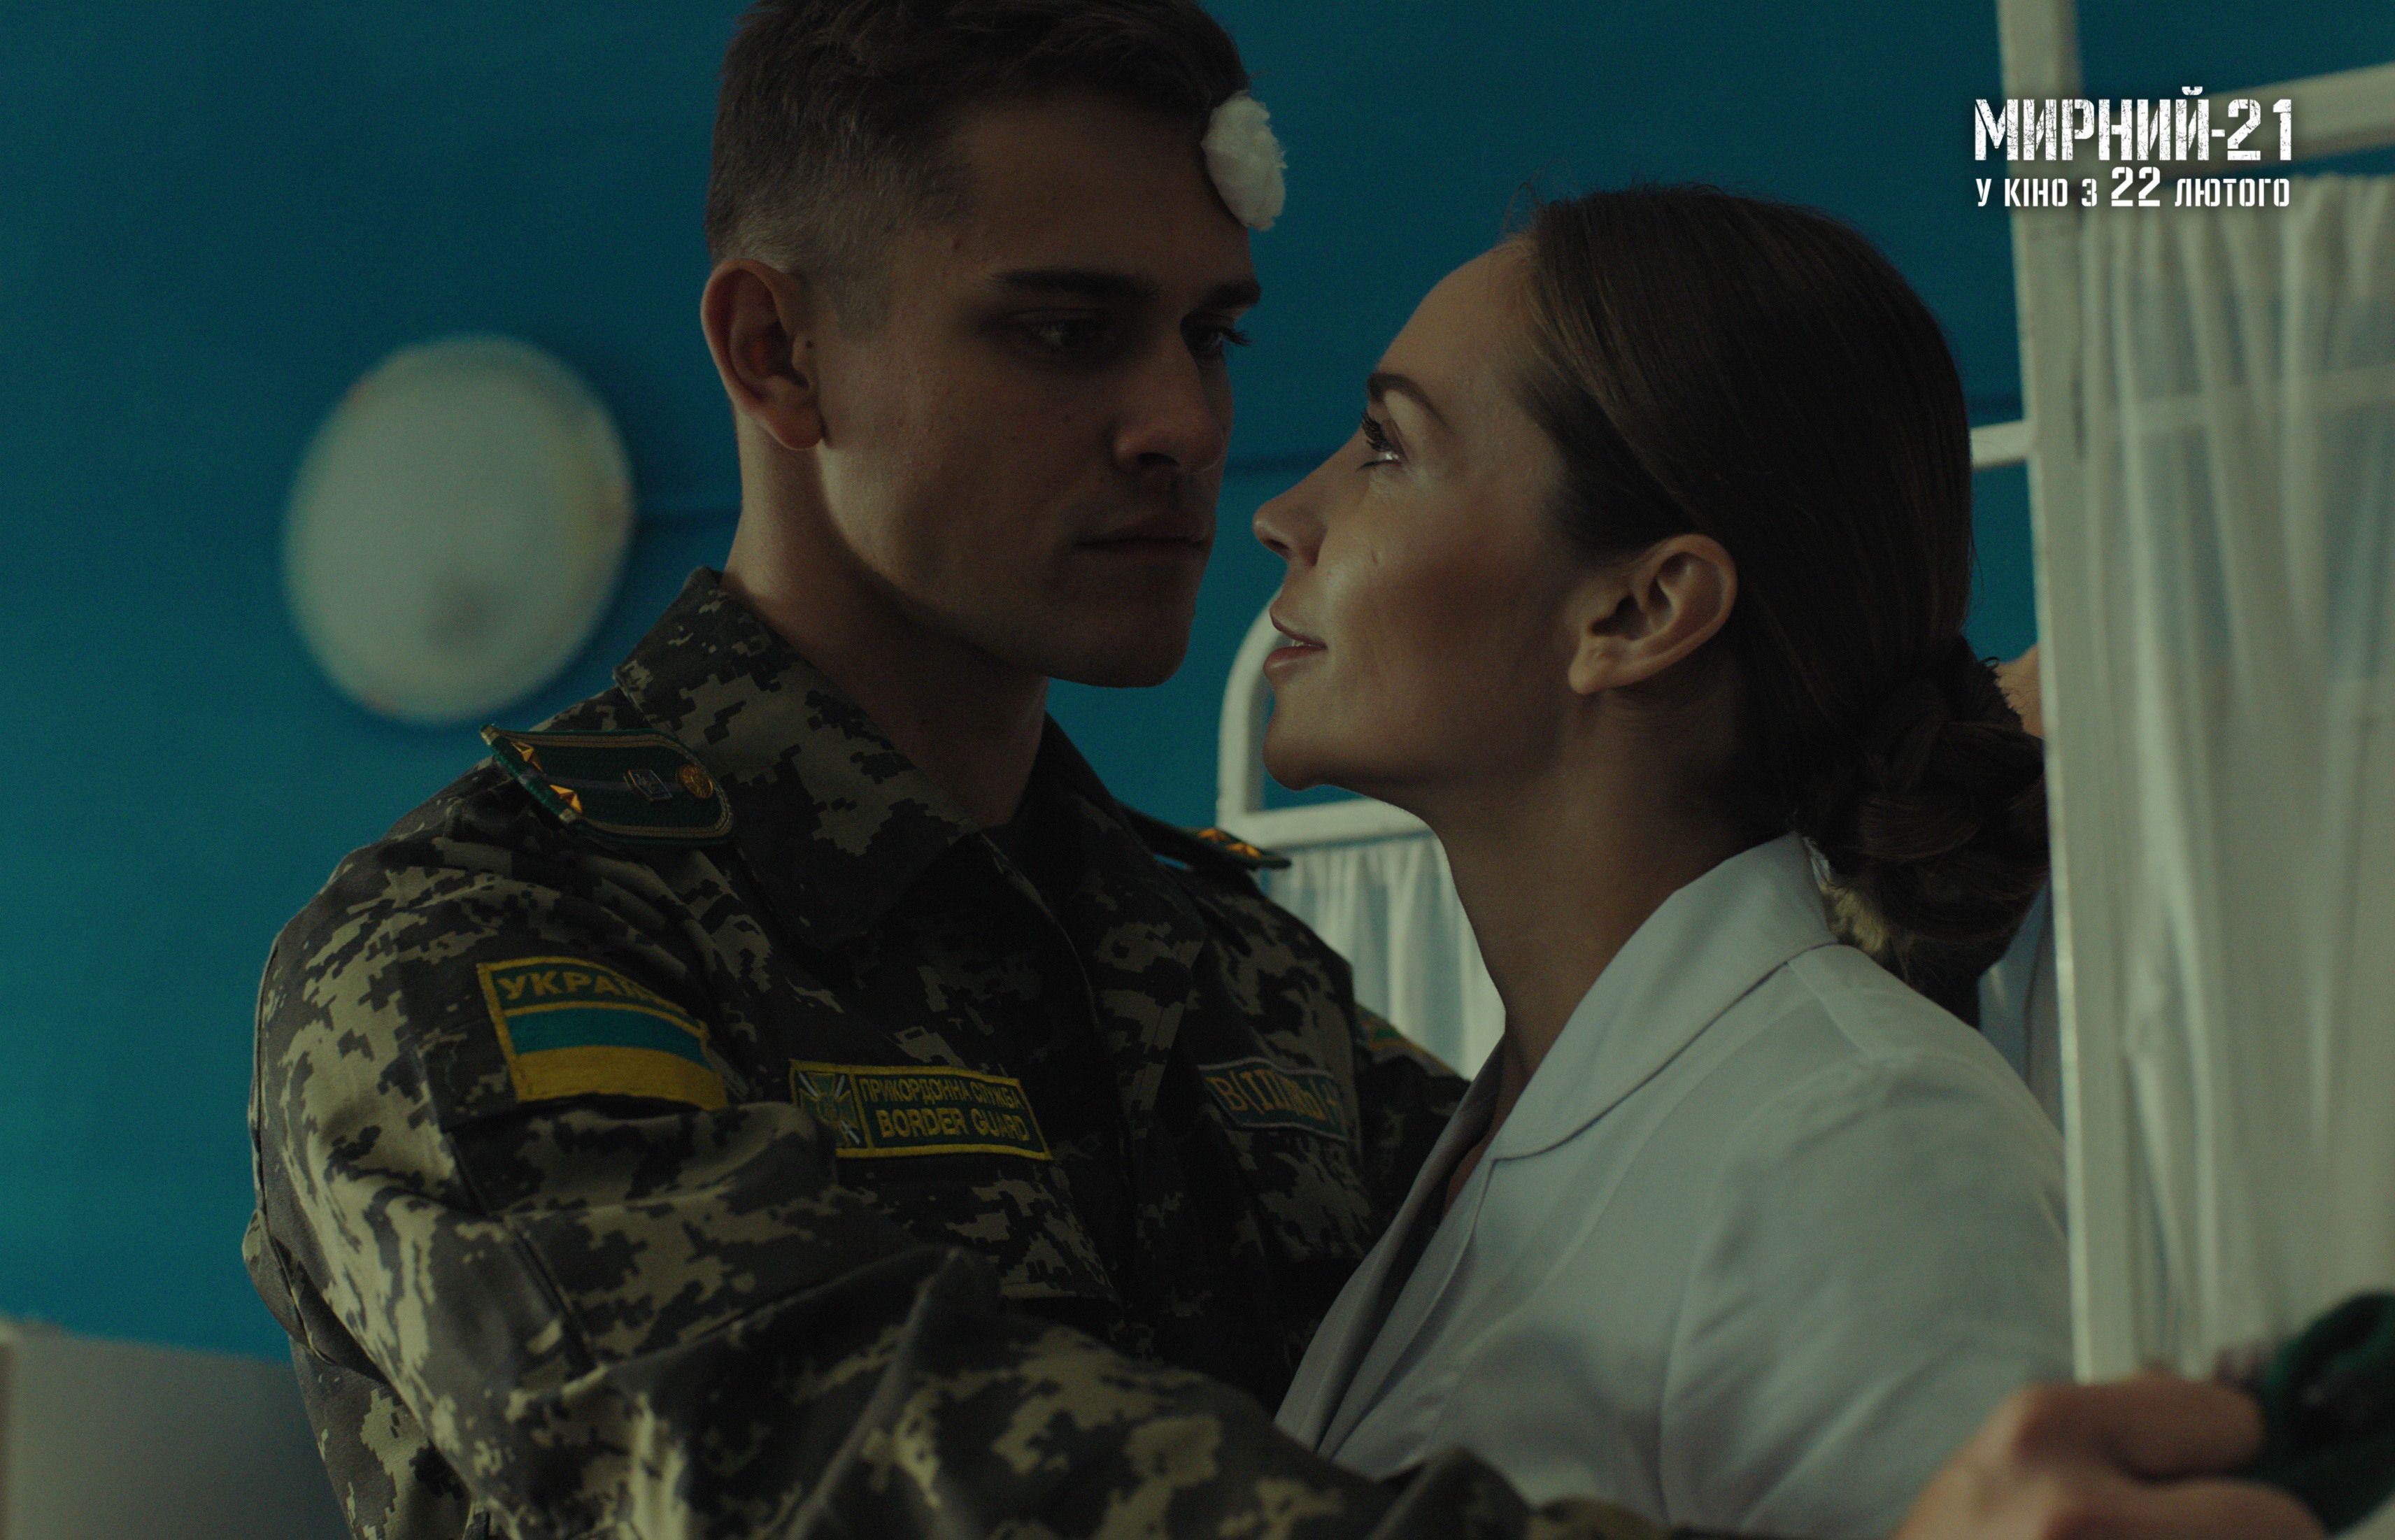 Мирный-21 фильм Ахтема Сеитабаева – трейлер, дата премьеры, актеры